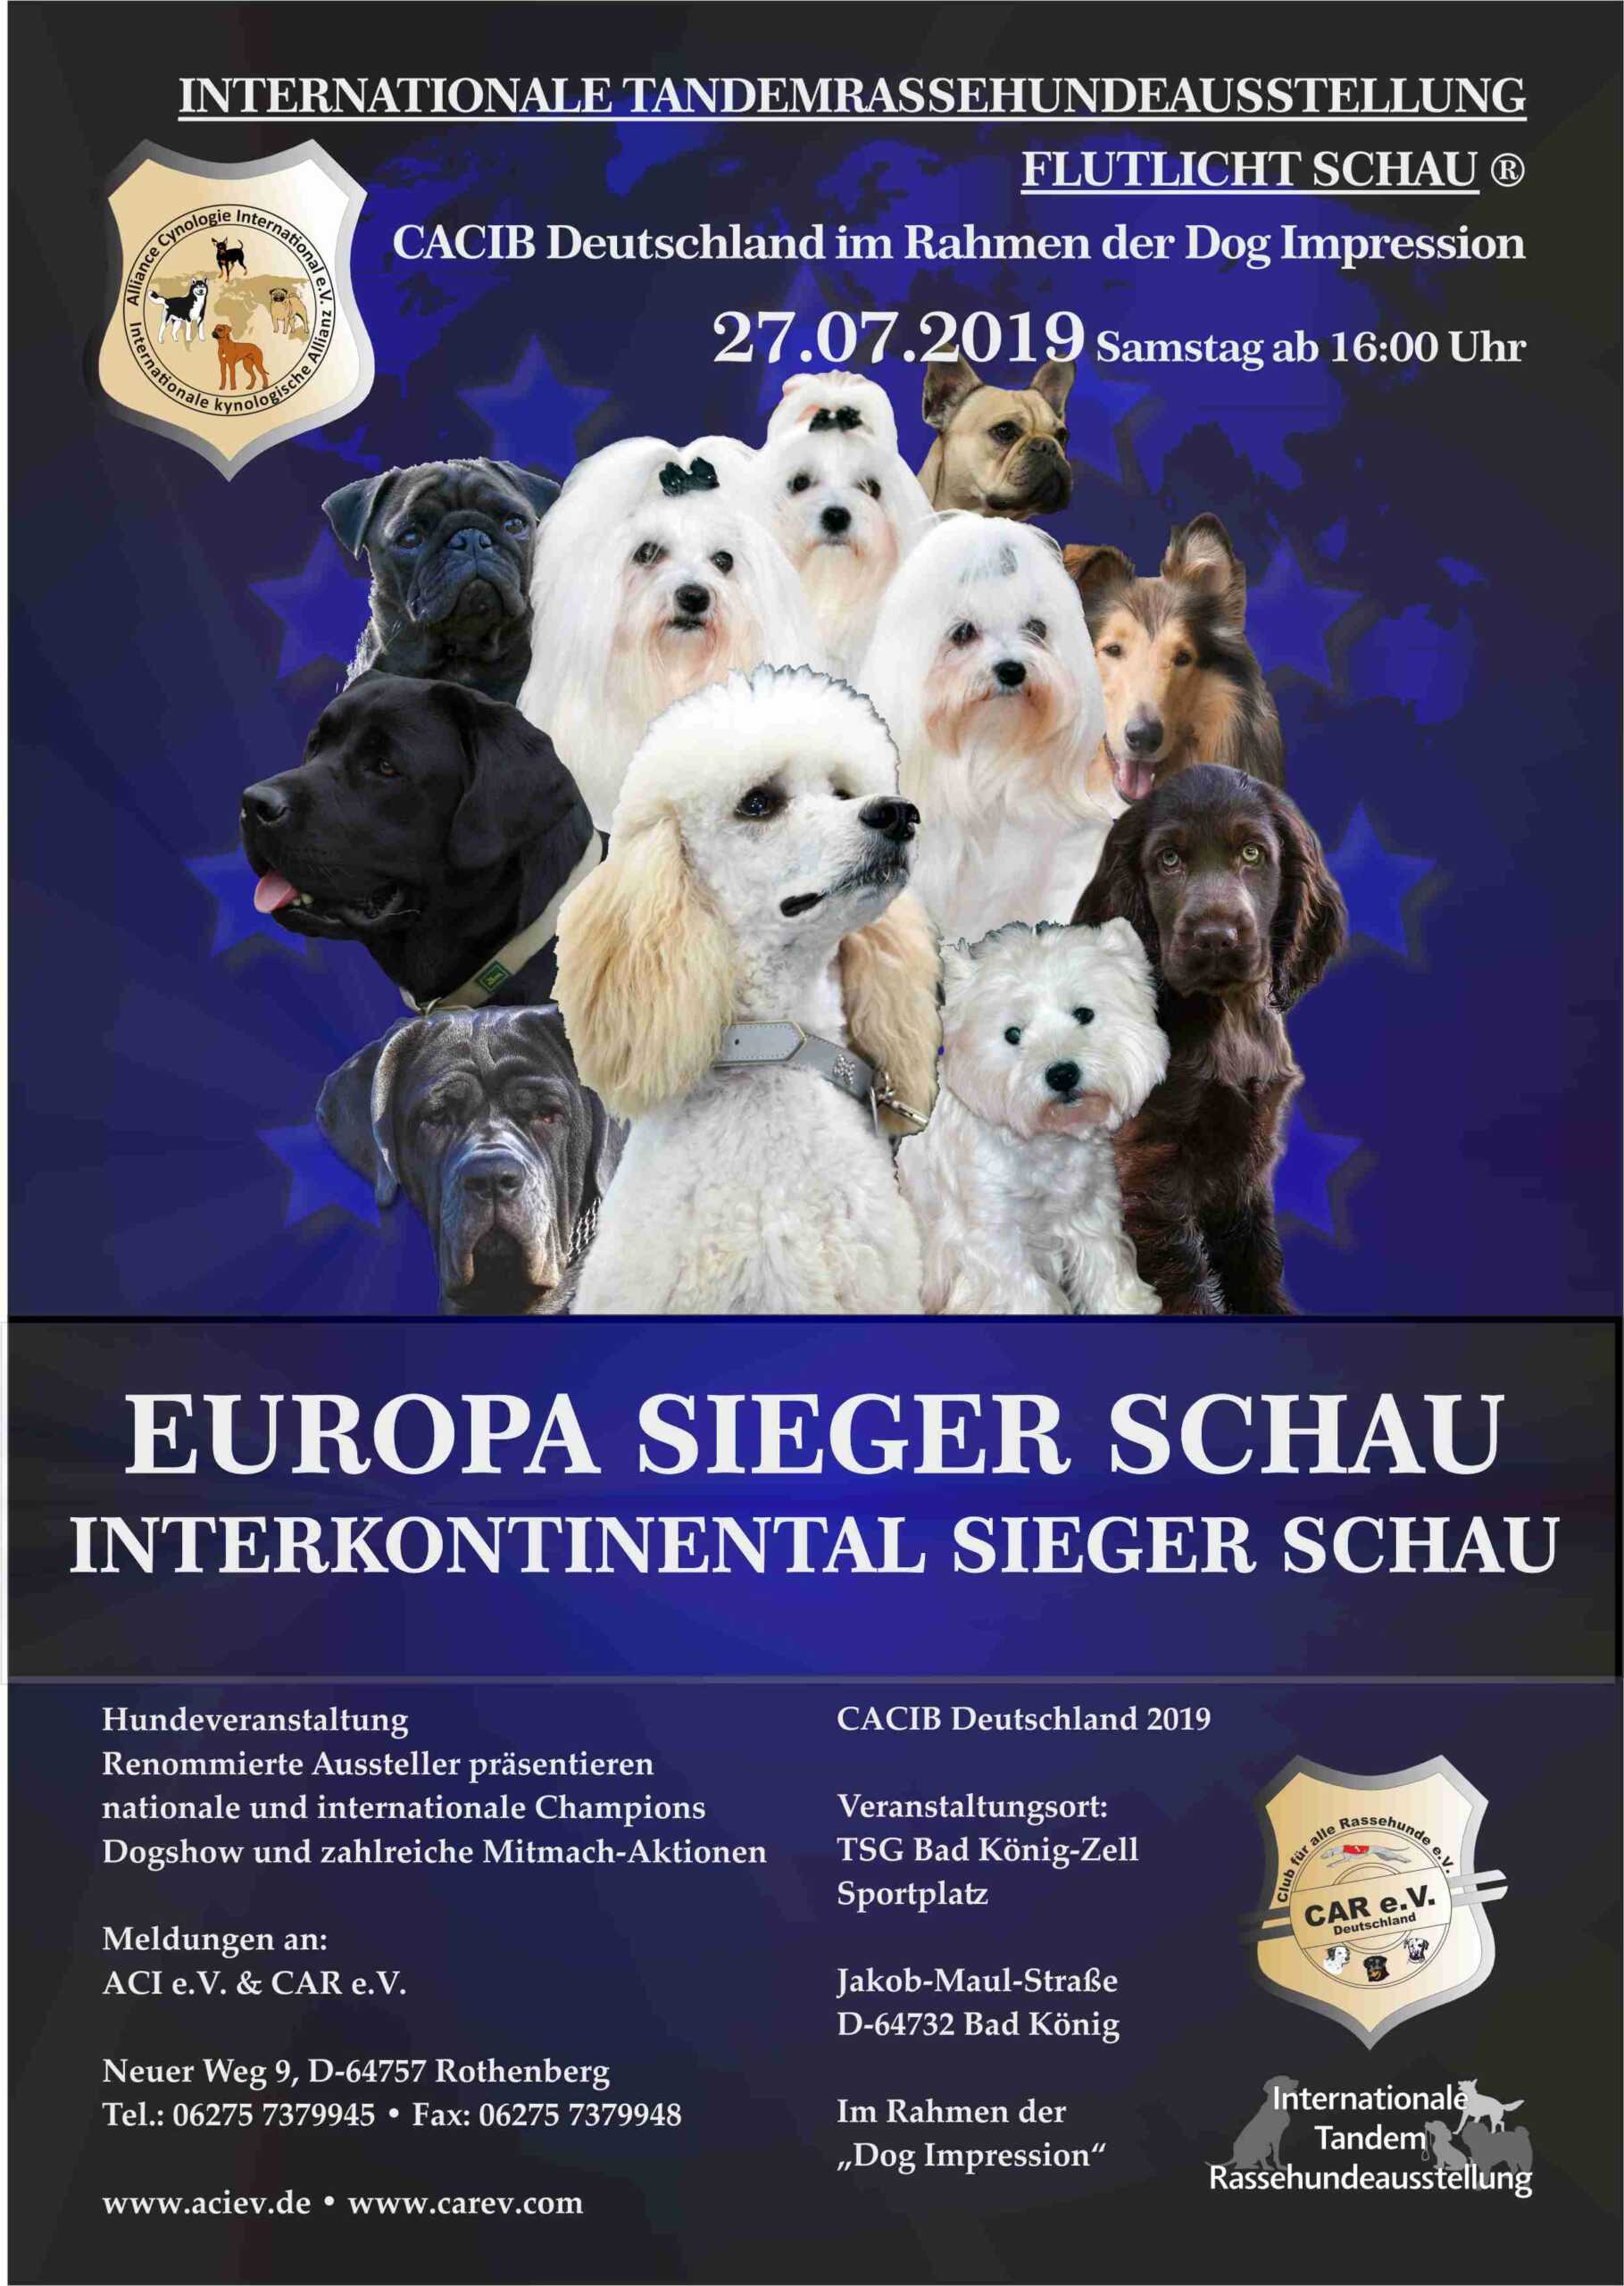 Europa Sieger Schau & Interkontinental Sieger Schau 27.07.2019